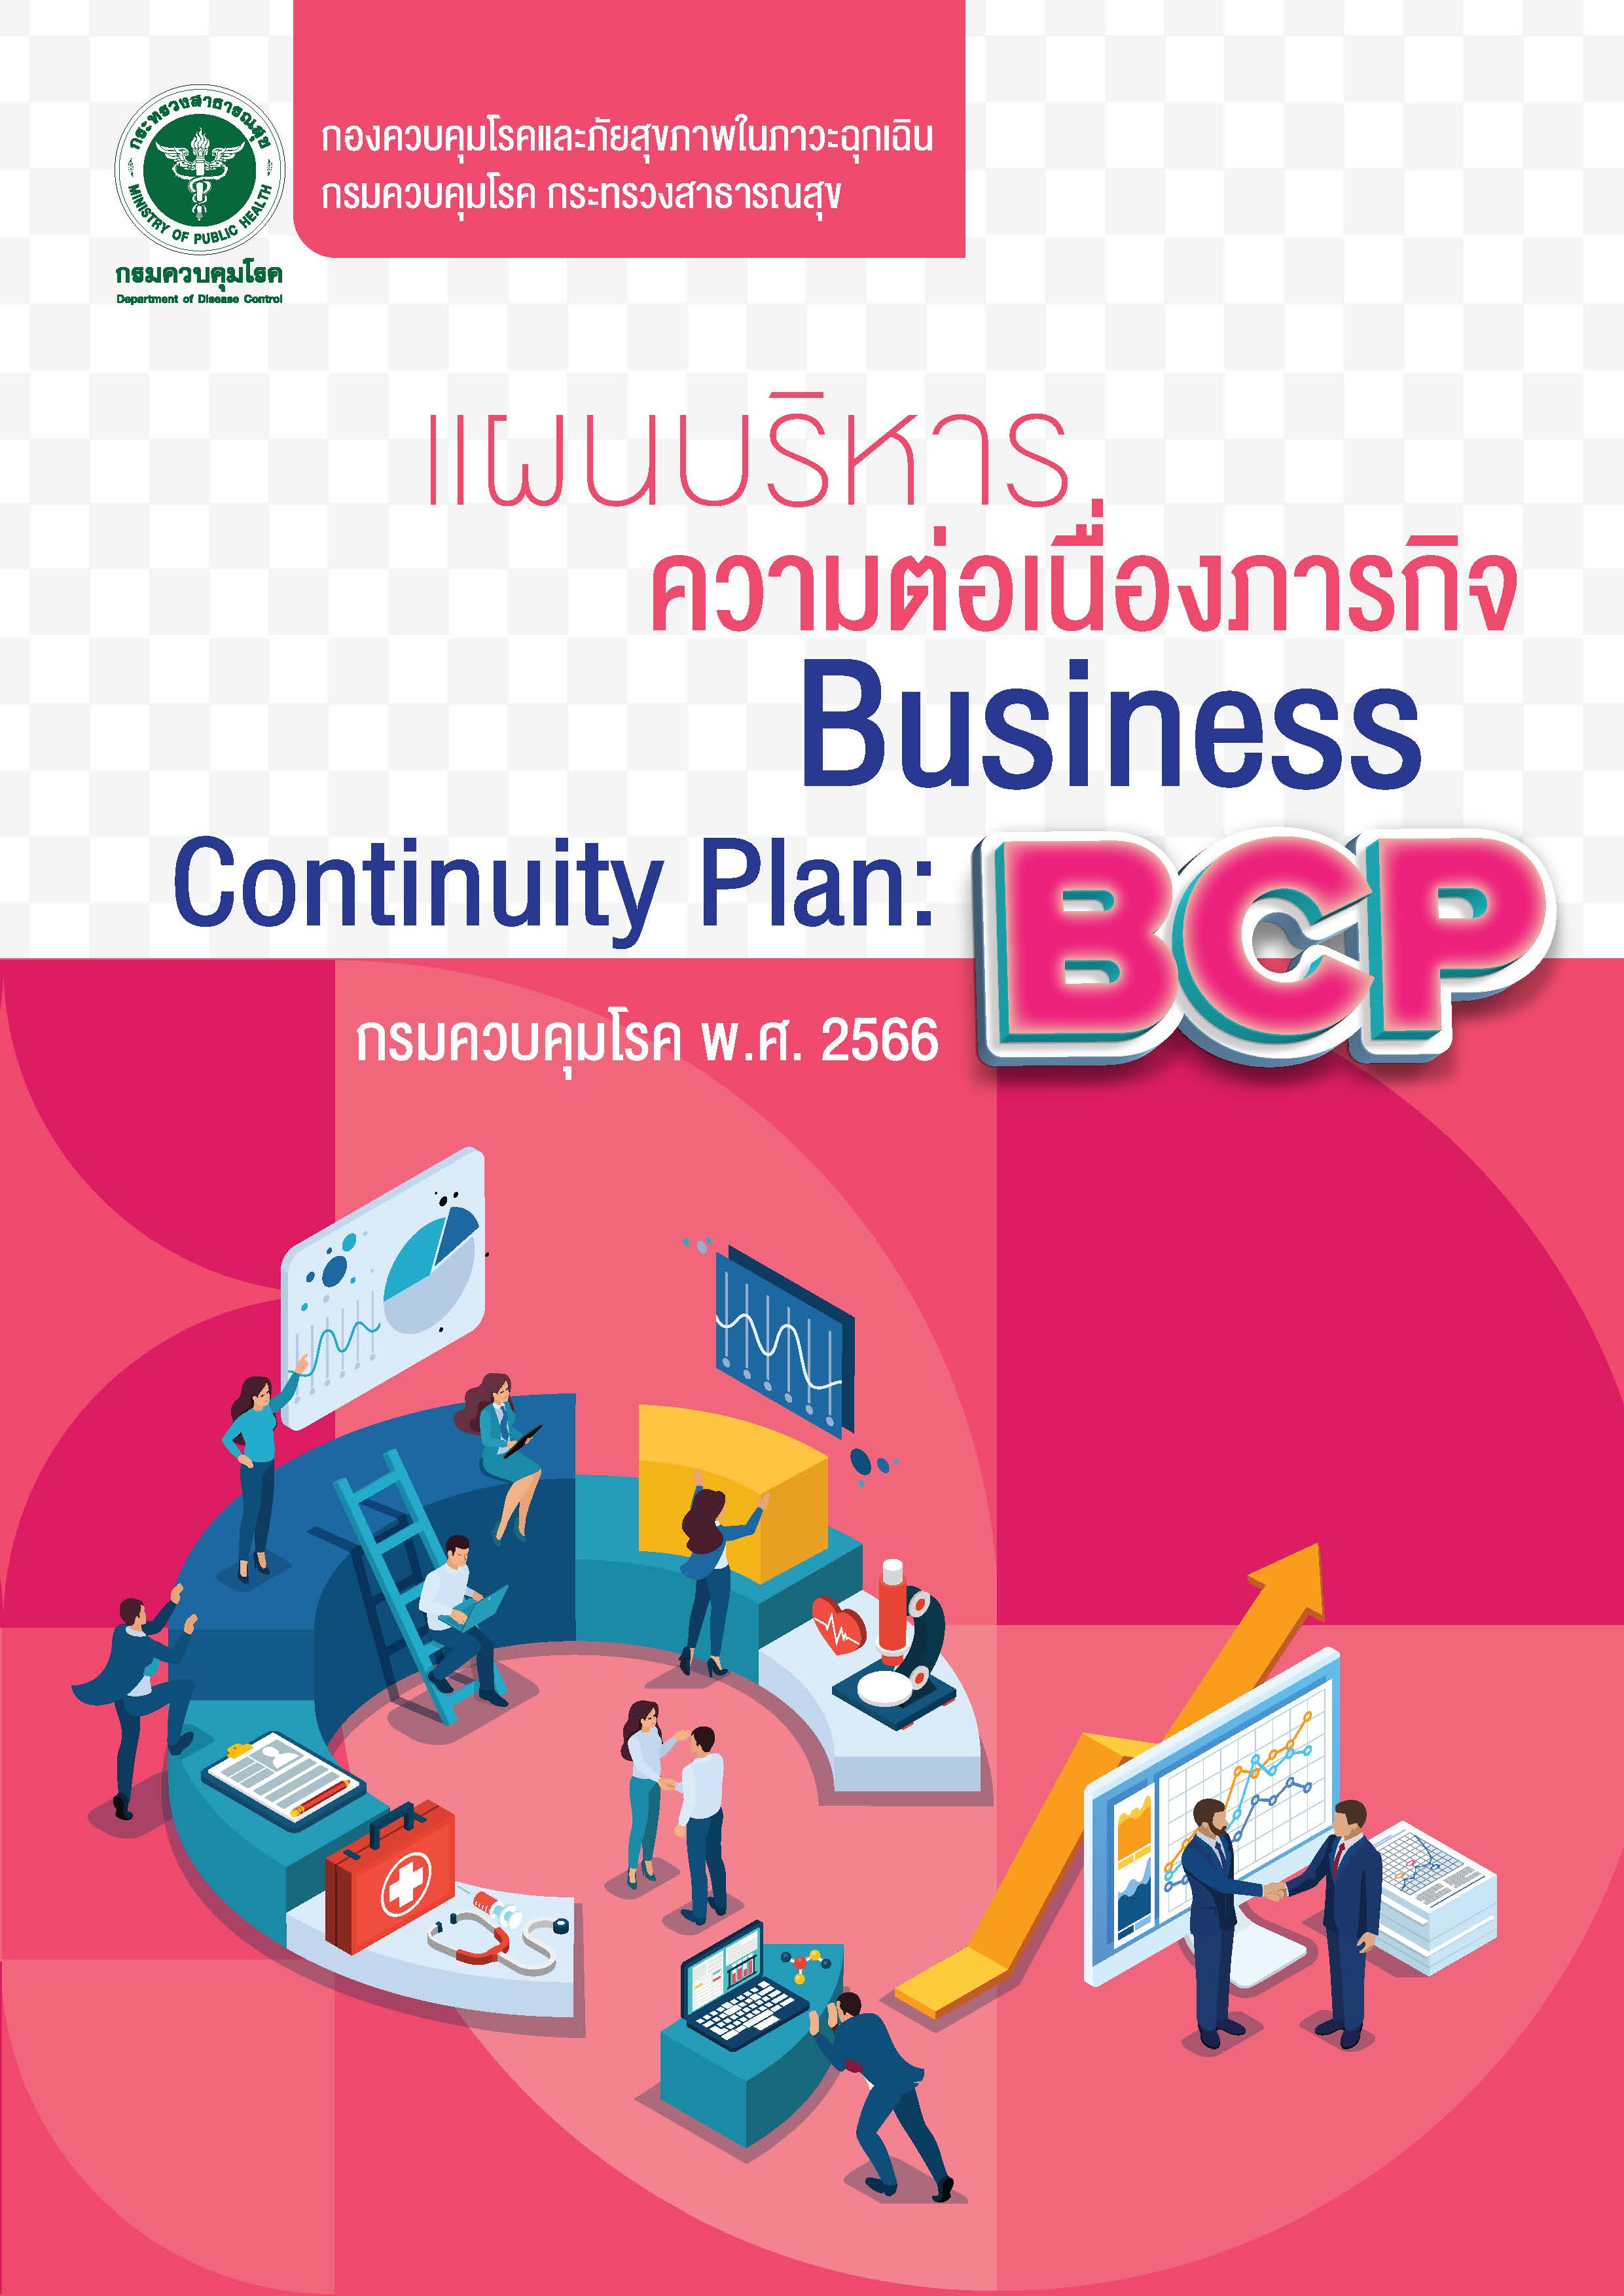 แผนความต่อเนื่องภารกิจขององค์กร (Business Continuity Plan: BCP) กองควบคุมโรคและภัยสุขภาพในภาวะฉุกเฉิน กรมควบคุมโรค ปี 2566